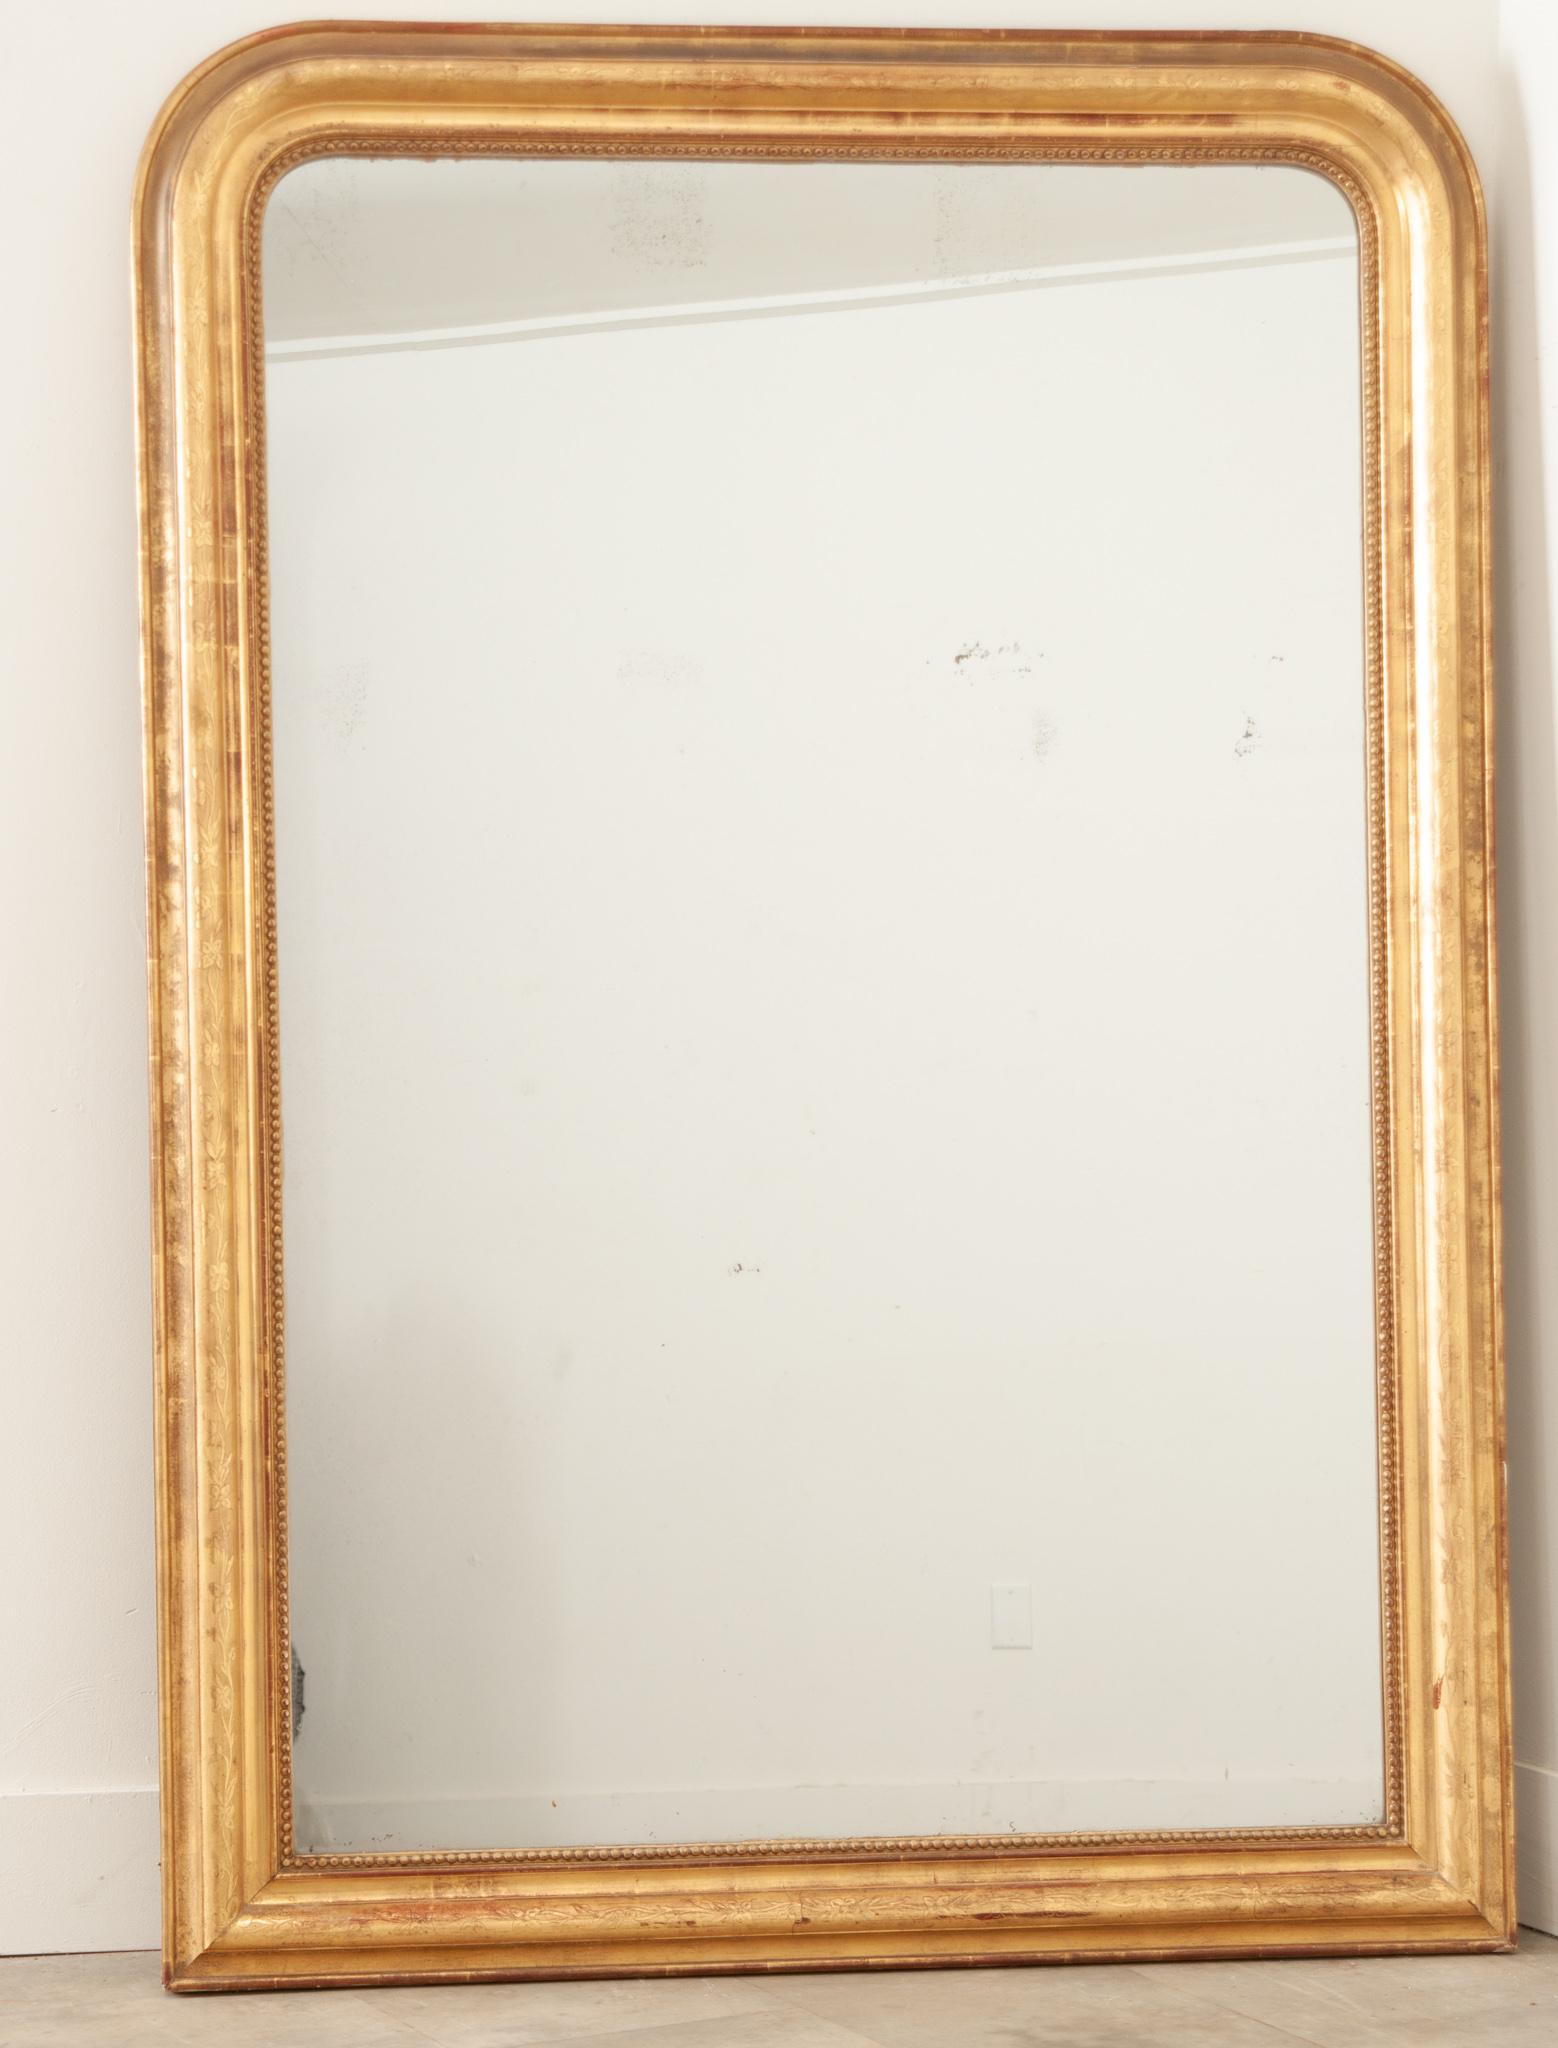 Miroir mural ou de cheminée de style Louis Philippe, élégant et intemporel avec son cadre rectangulaire profondément mouluré et garni, aux angles supérieurs arrondis. Fabriqué à la main en France au XIXe siècle, ce ravissant miroir présente des